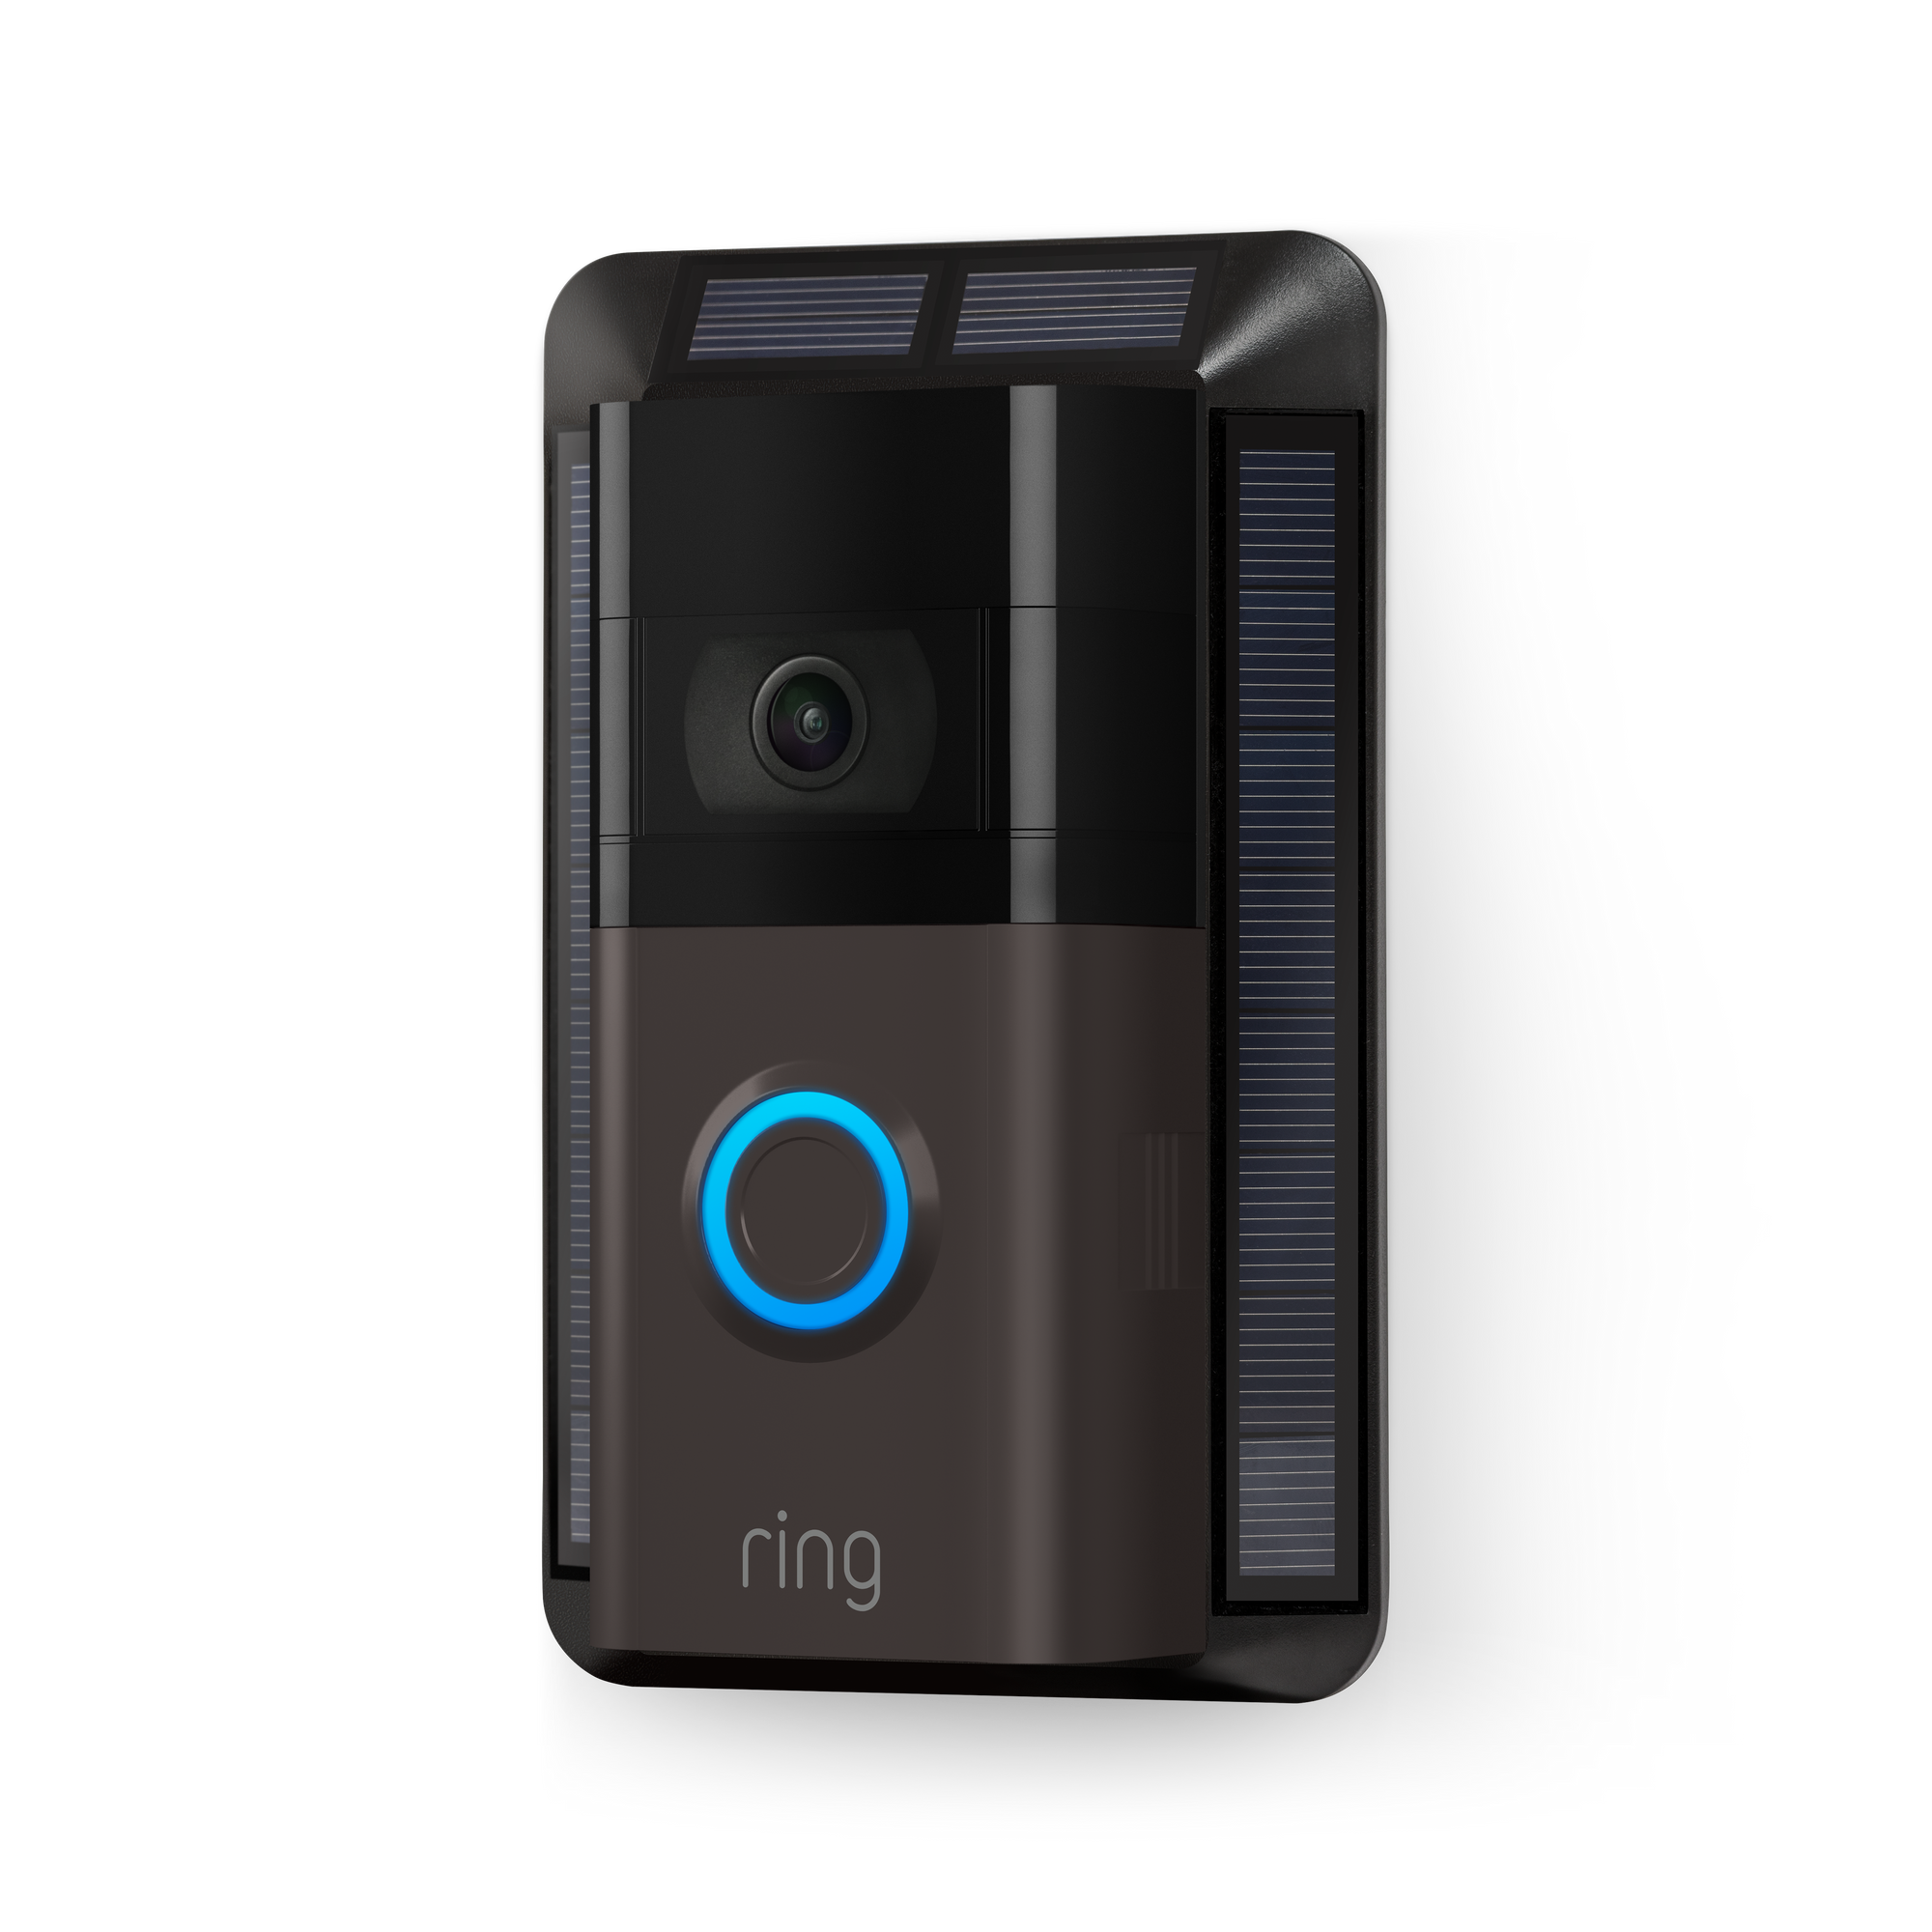 ring video doorbell charging